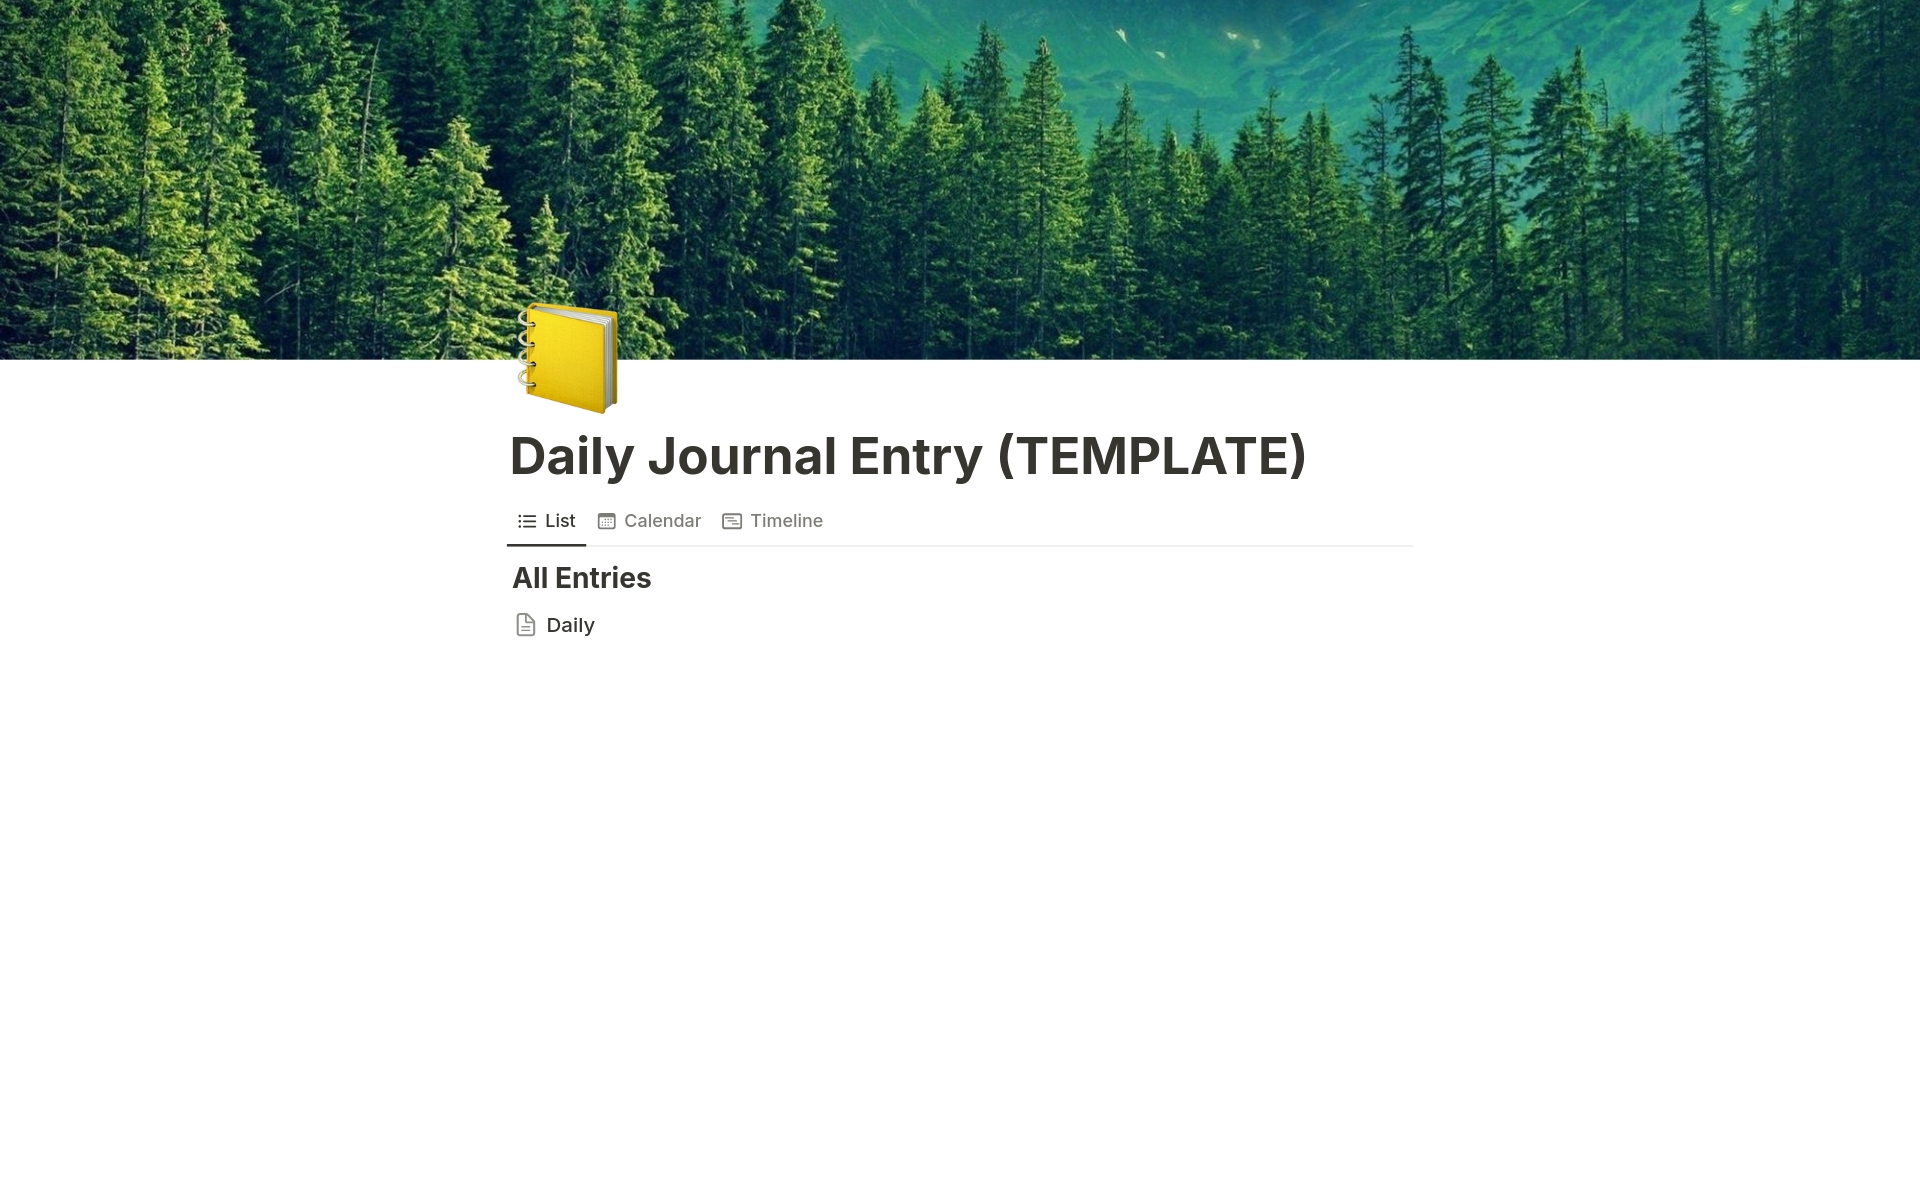 Vista previa de plantilla para Daily Journal Entry